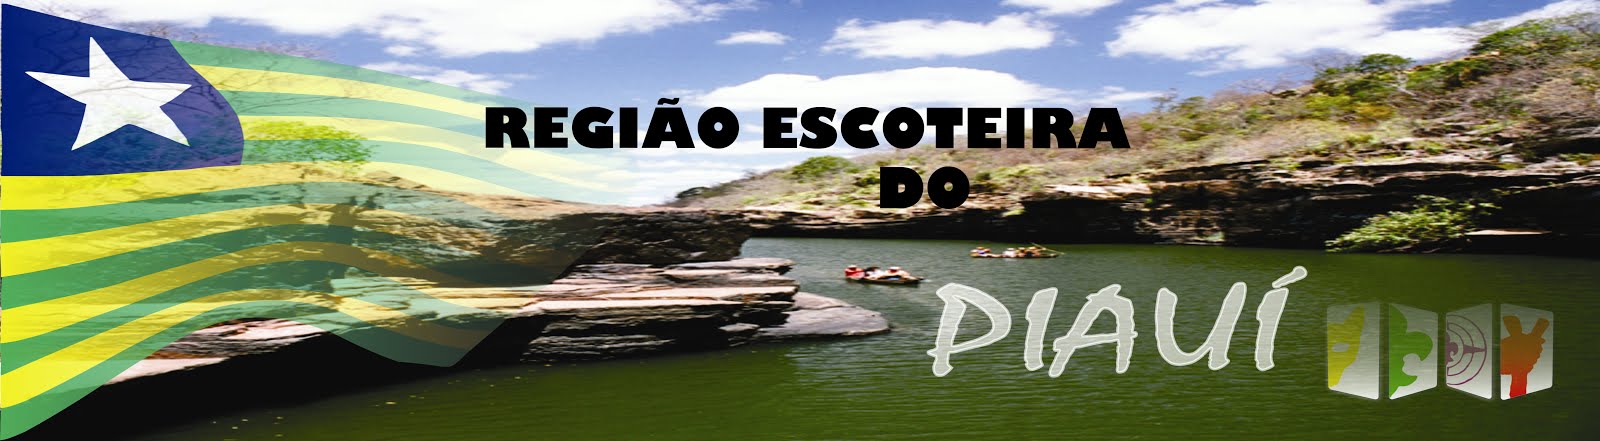 Região Escoteira do Piauí